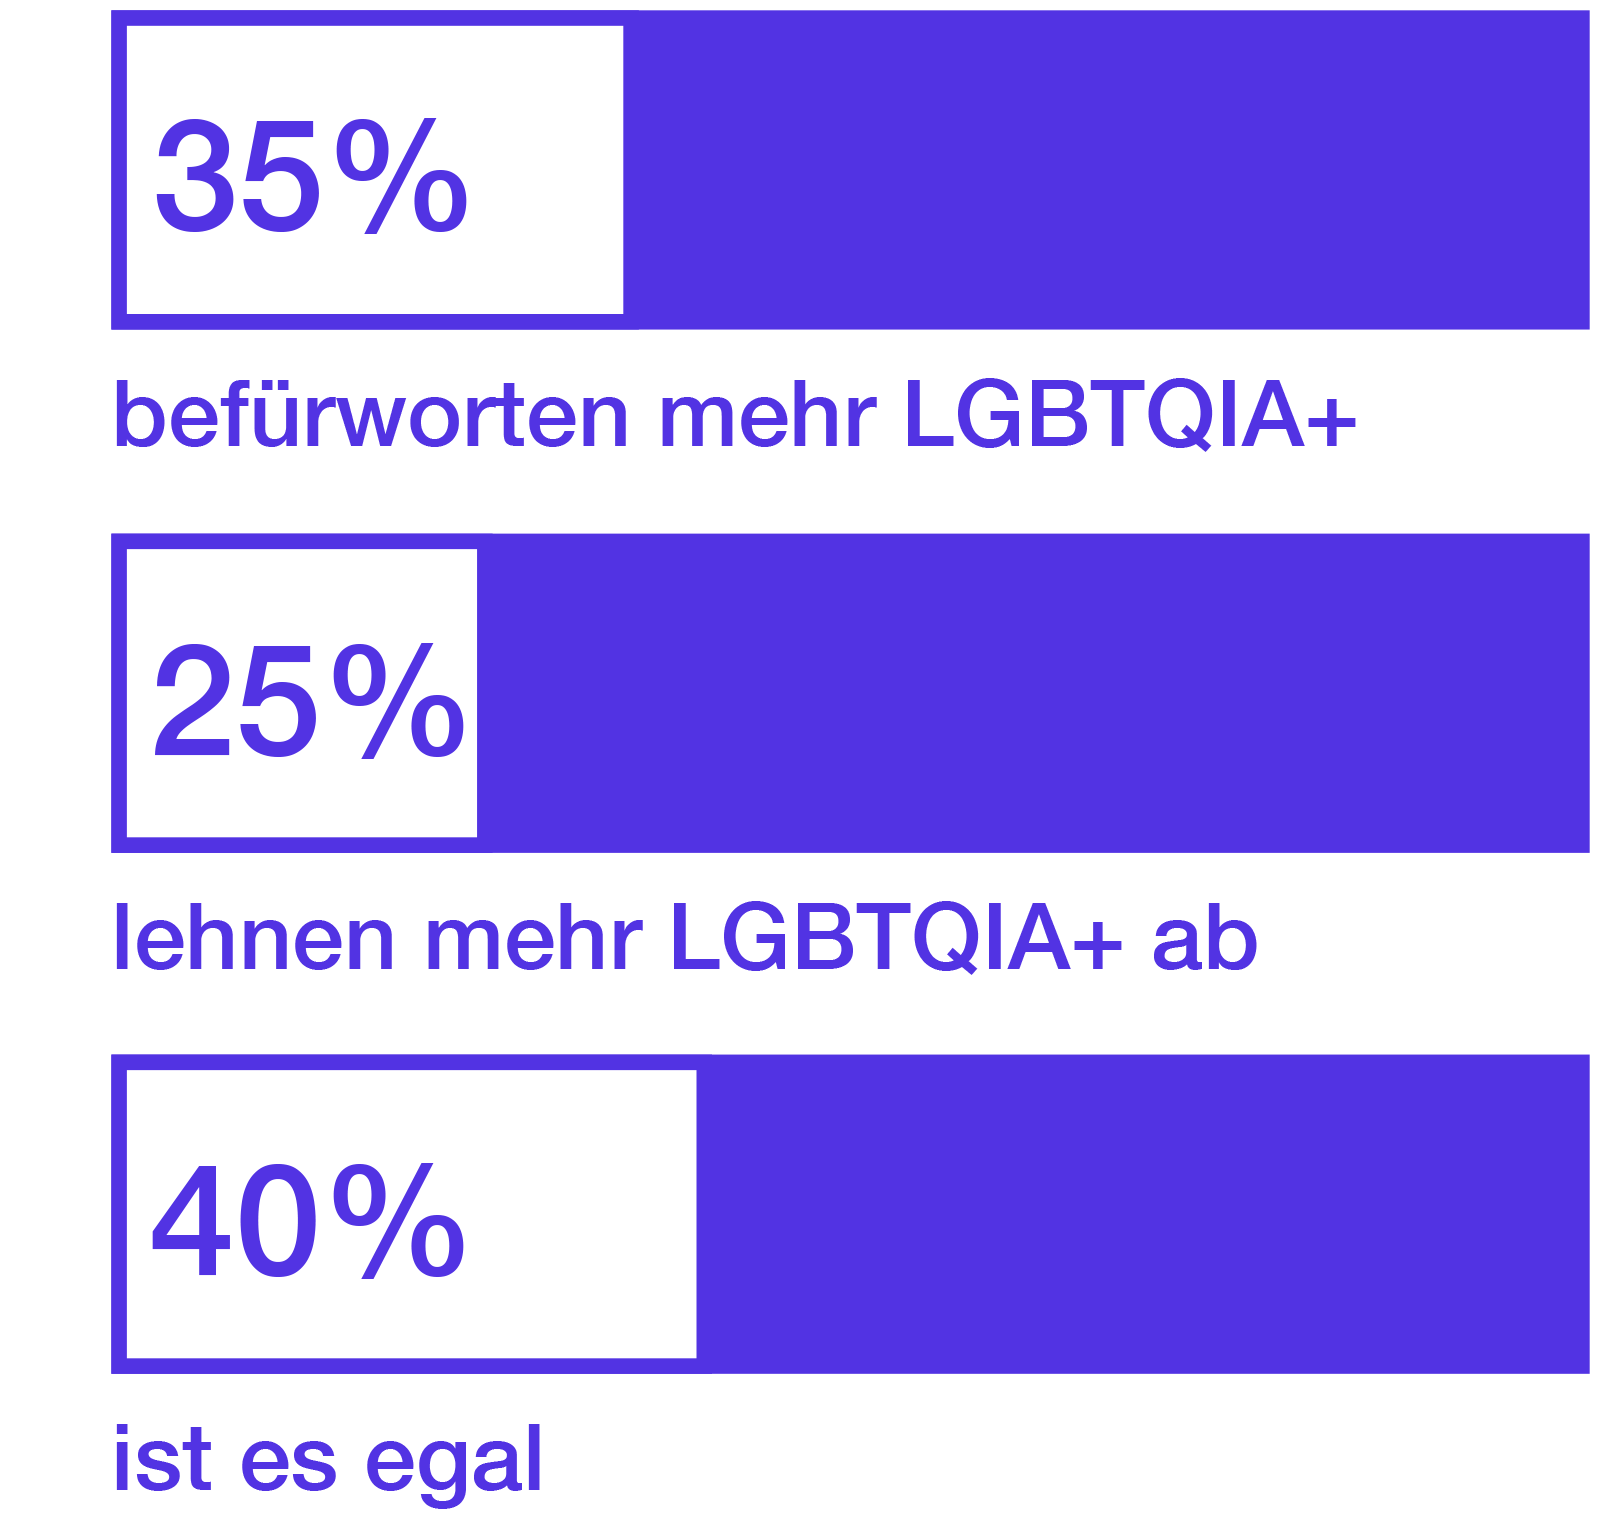 35% befürworten mehr LGBTIQ, 25% lehnen mehr LGBTIQ ab, 40% ist es egal